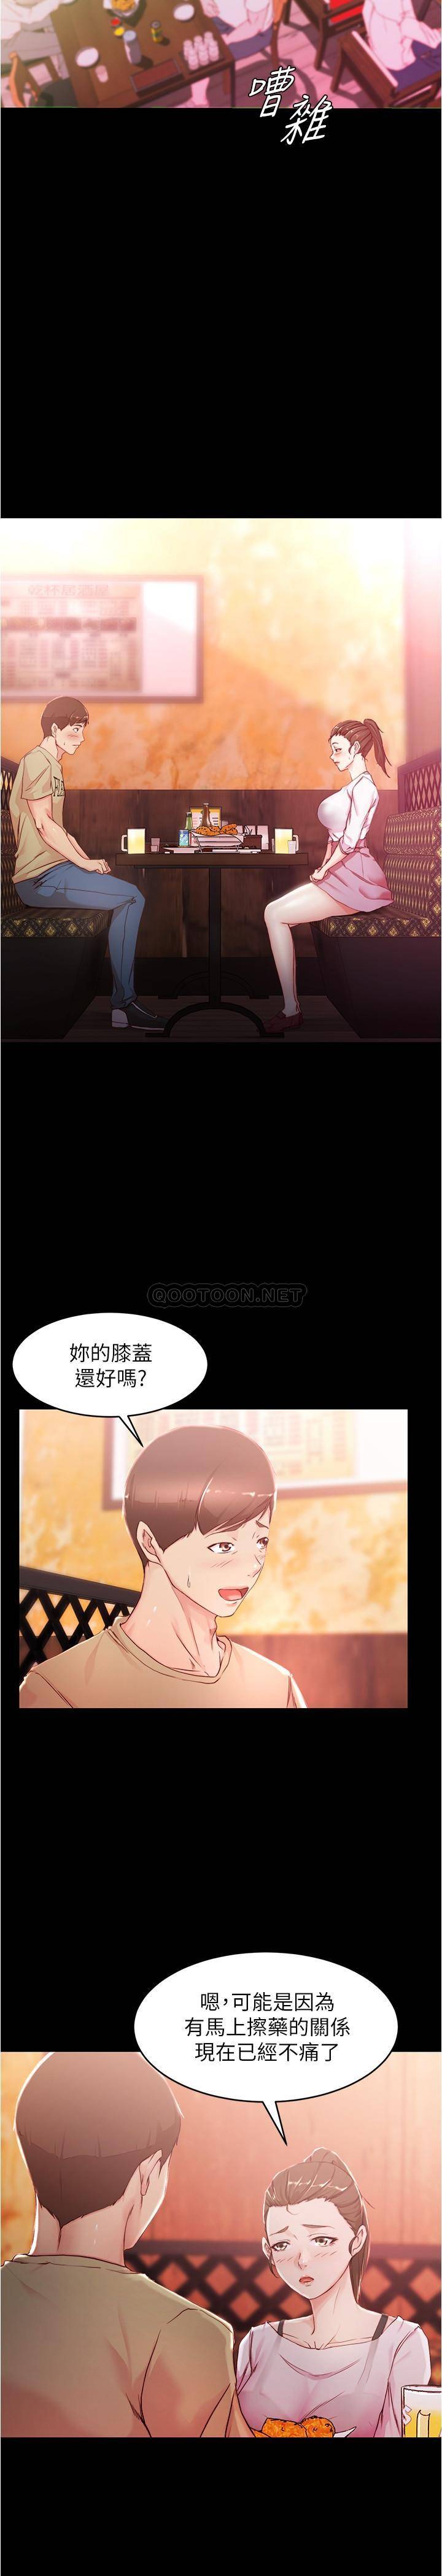 韩国污漫画 小褲褲筆記 第24话 - 让人欲罢不能的汉娜 3